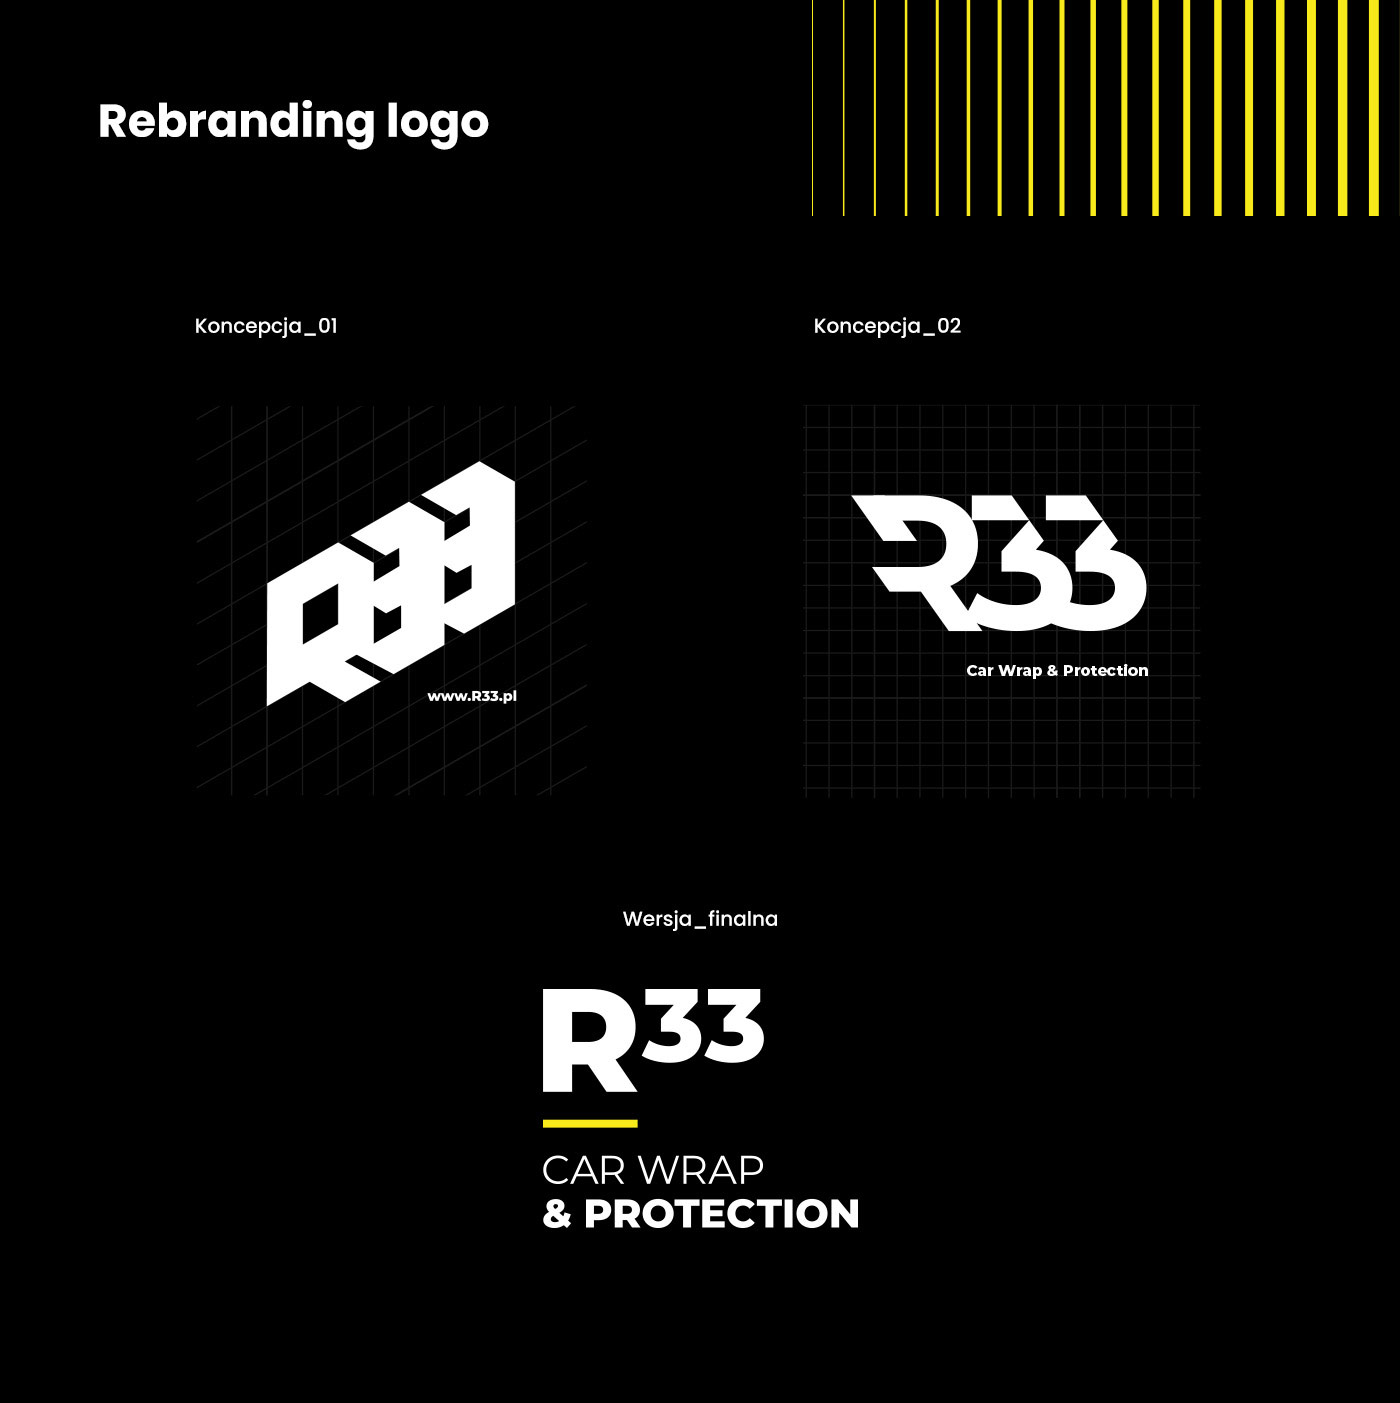 Rebranding logo - Różne koncepcje loga R33 wraz z wersją finalną